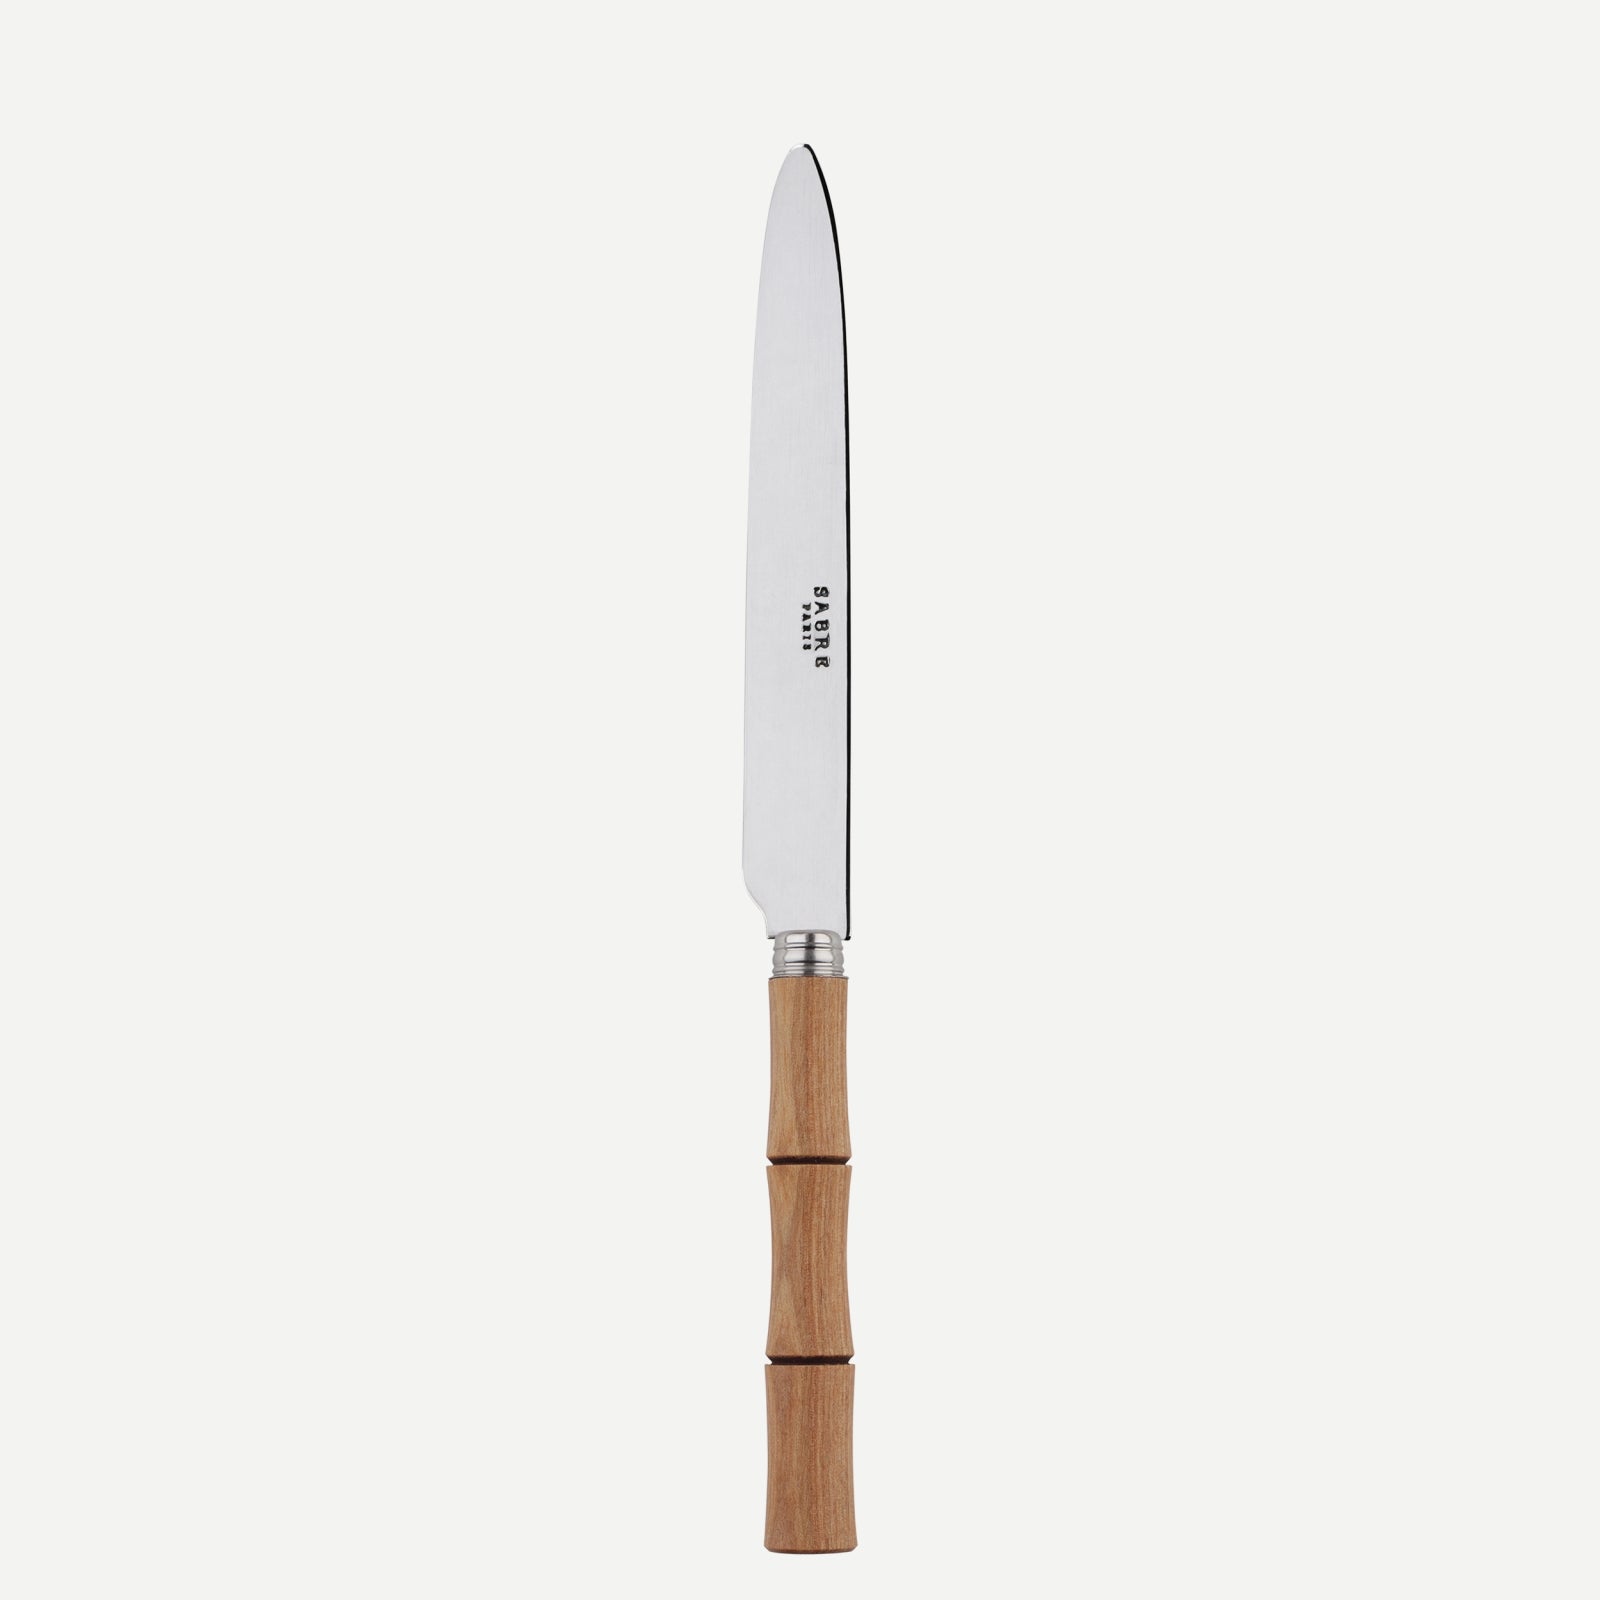 Dinner knife - Bamboo - Light press wood